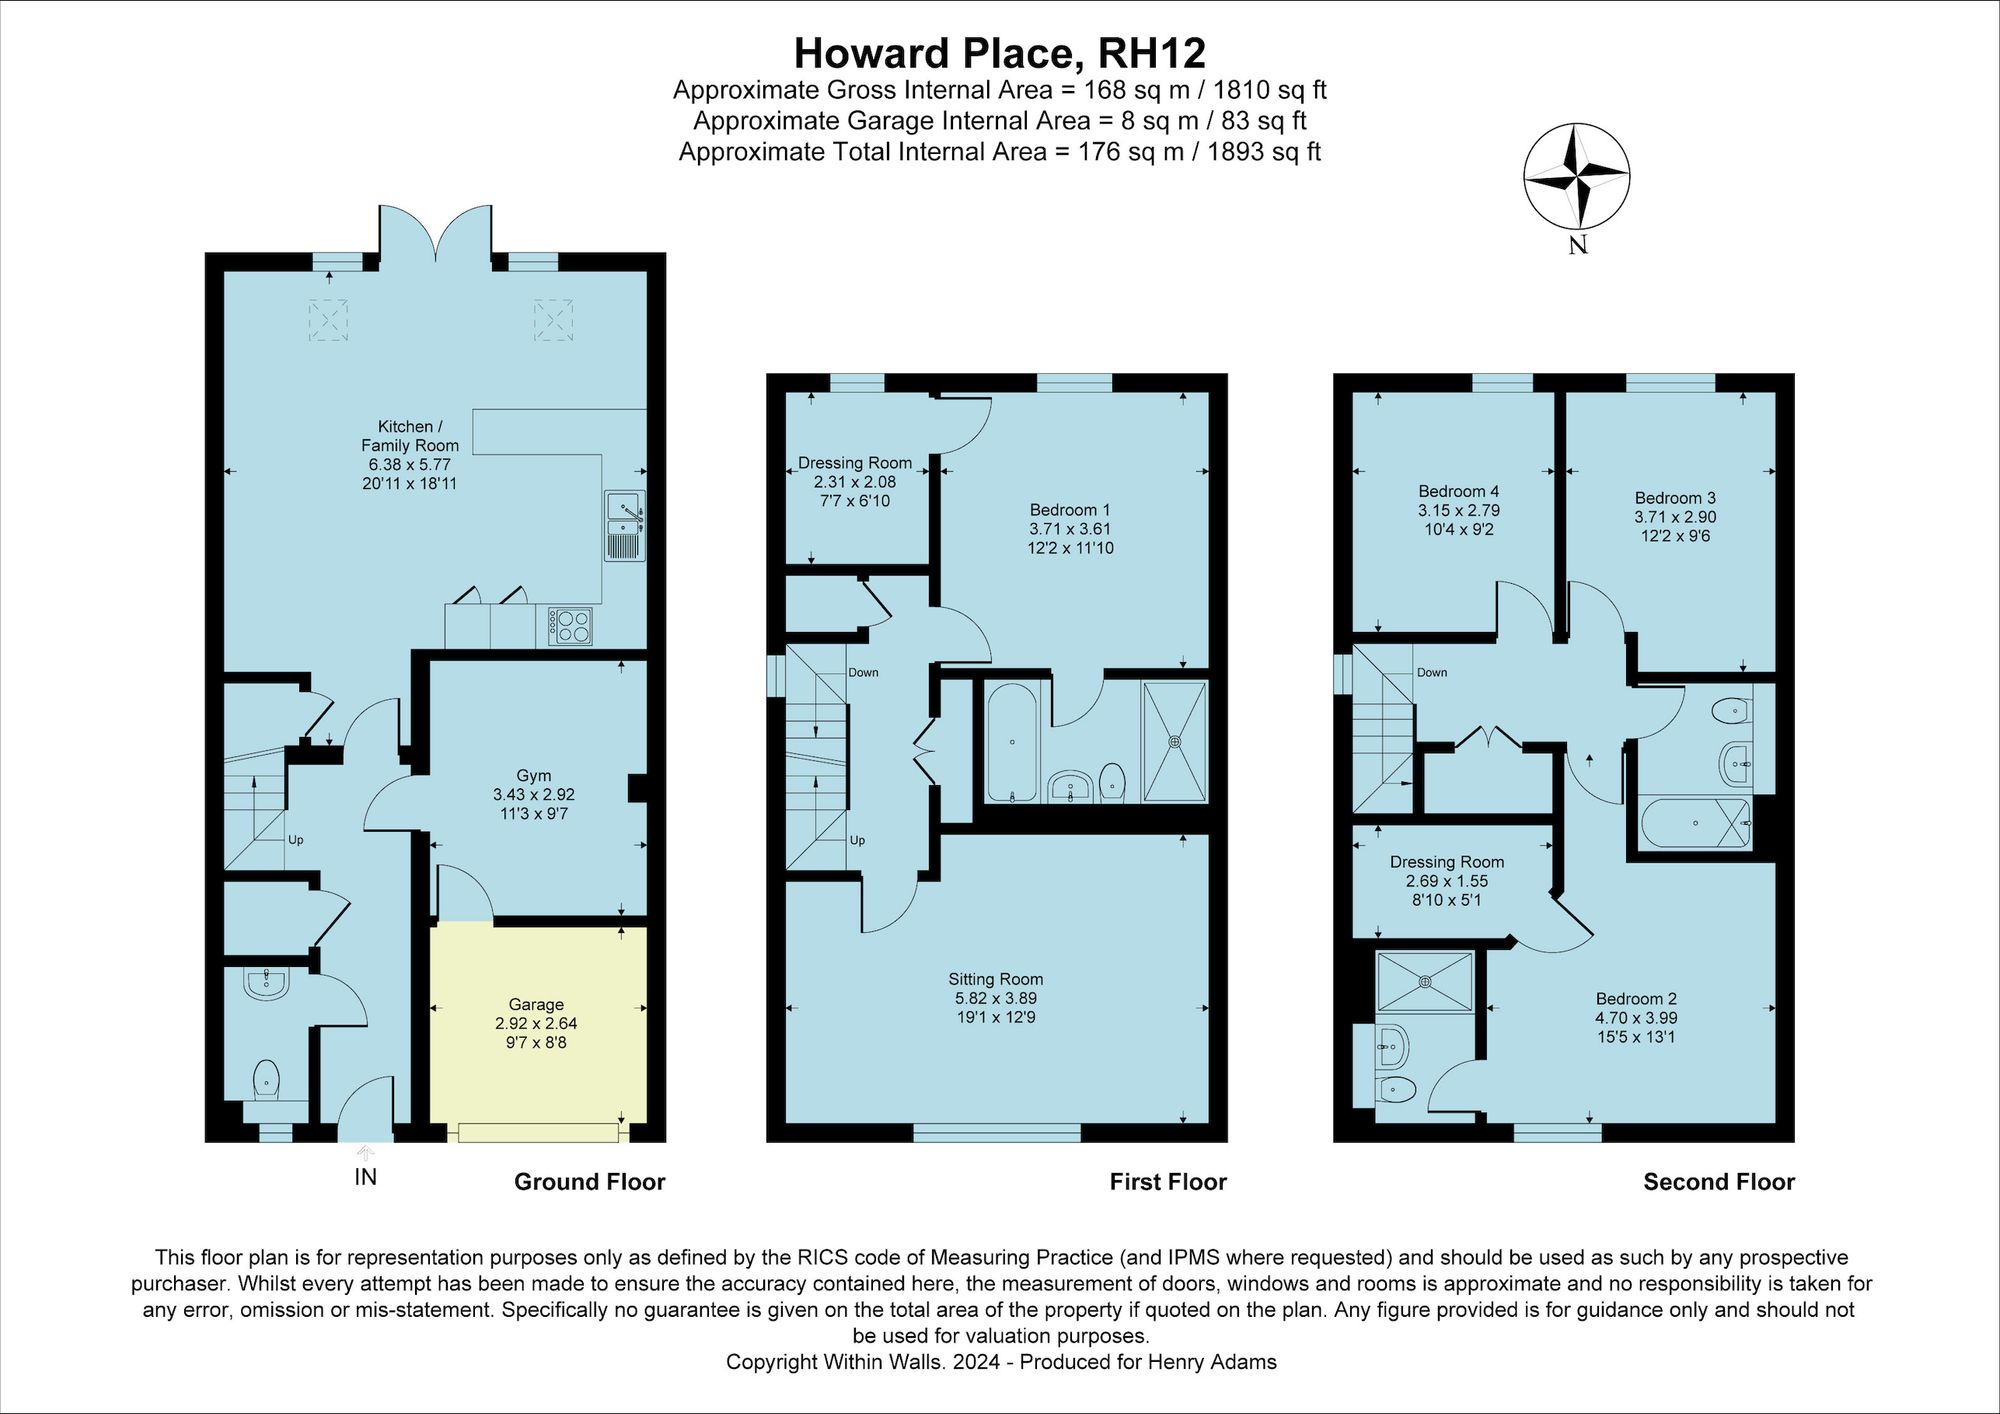 Howard Place, Horsham, RH12 floorplans